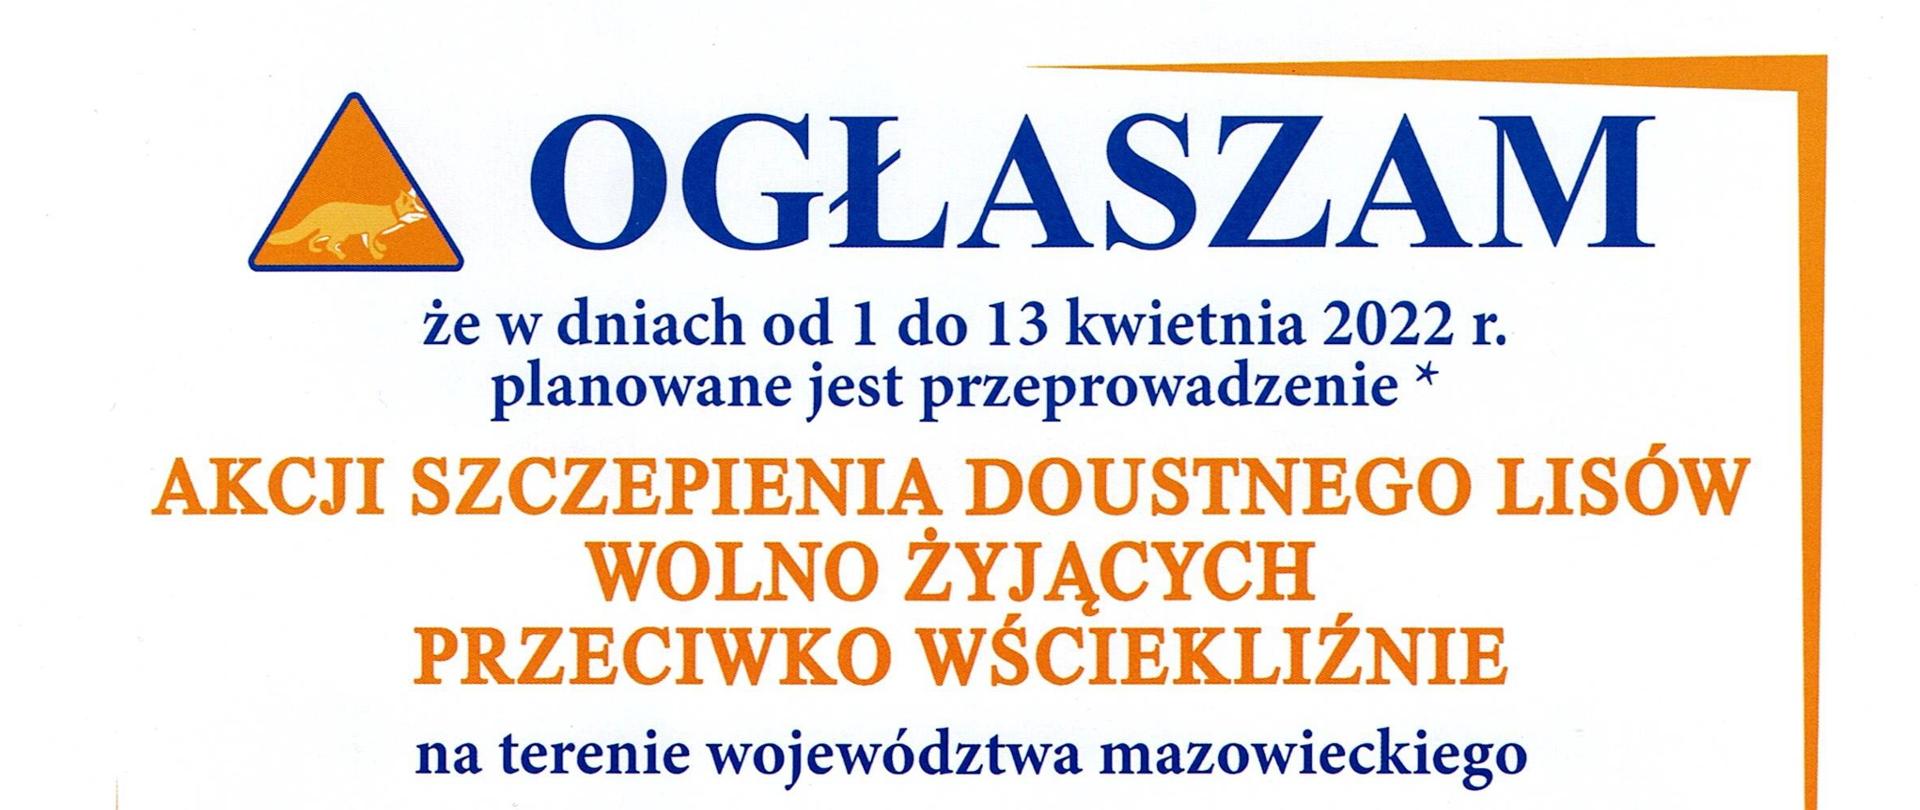 Komunikat Mazowieckiego Wojewódzkiego Lekarza Weterynarii